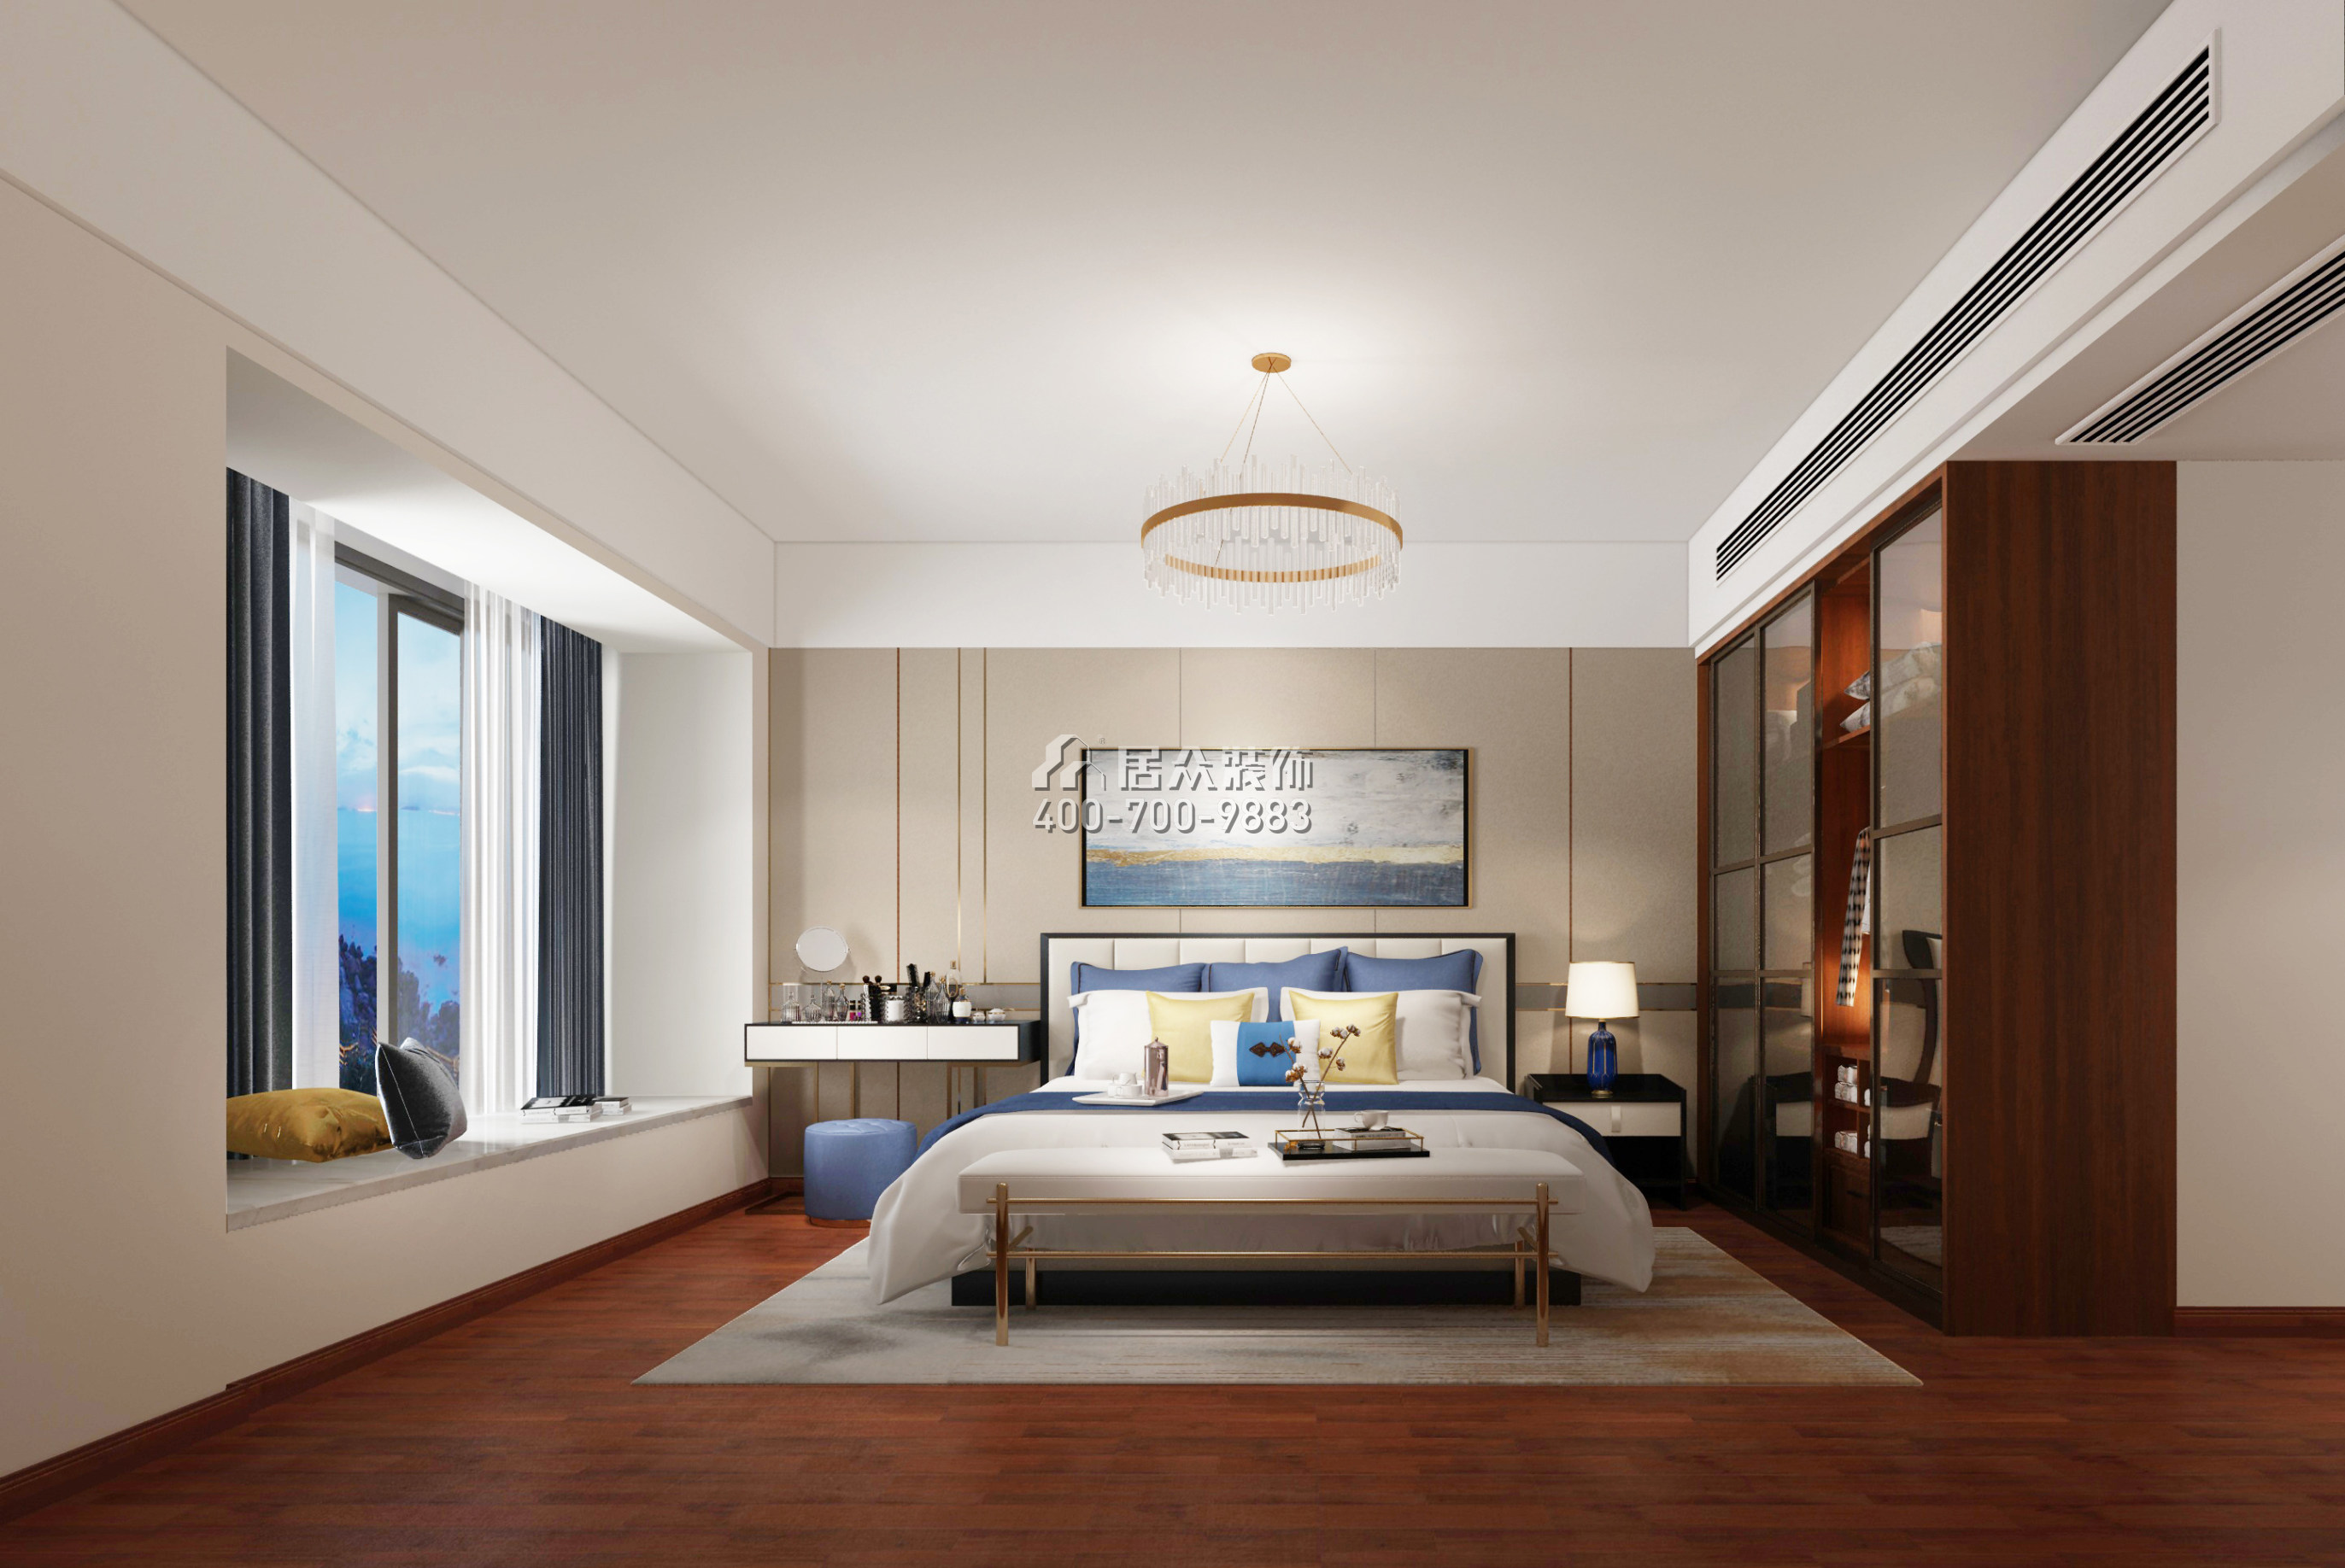 五洲花城二期225平方米現代簡約風格平層戶型臥室裝修效果圖